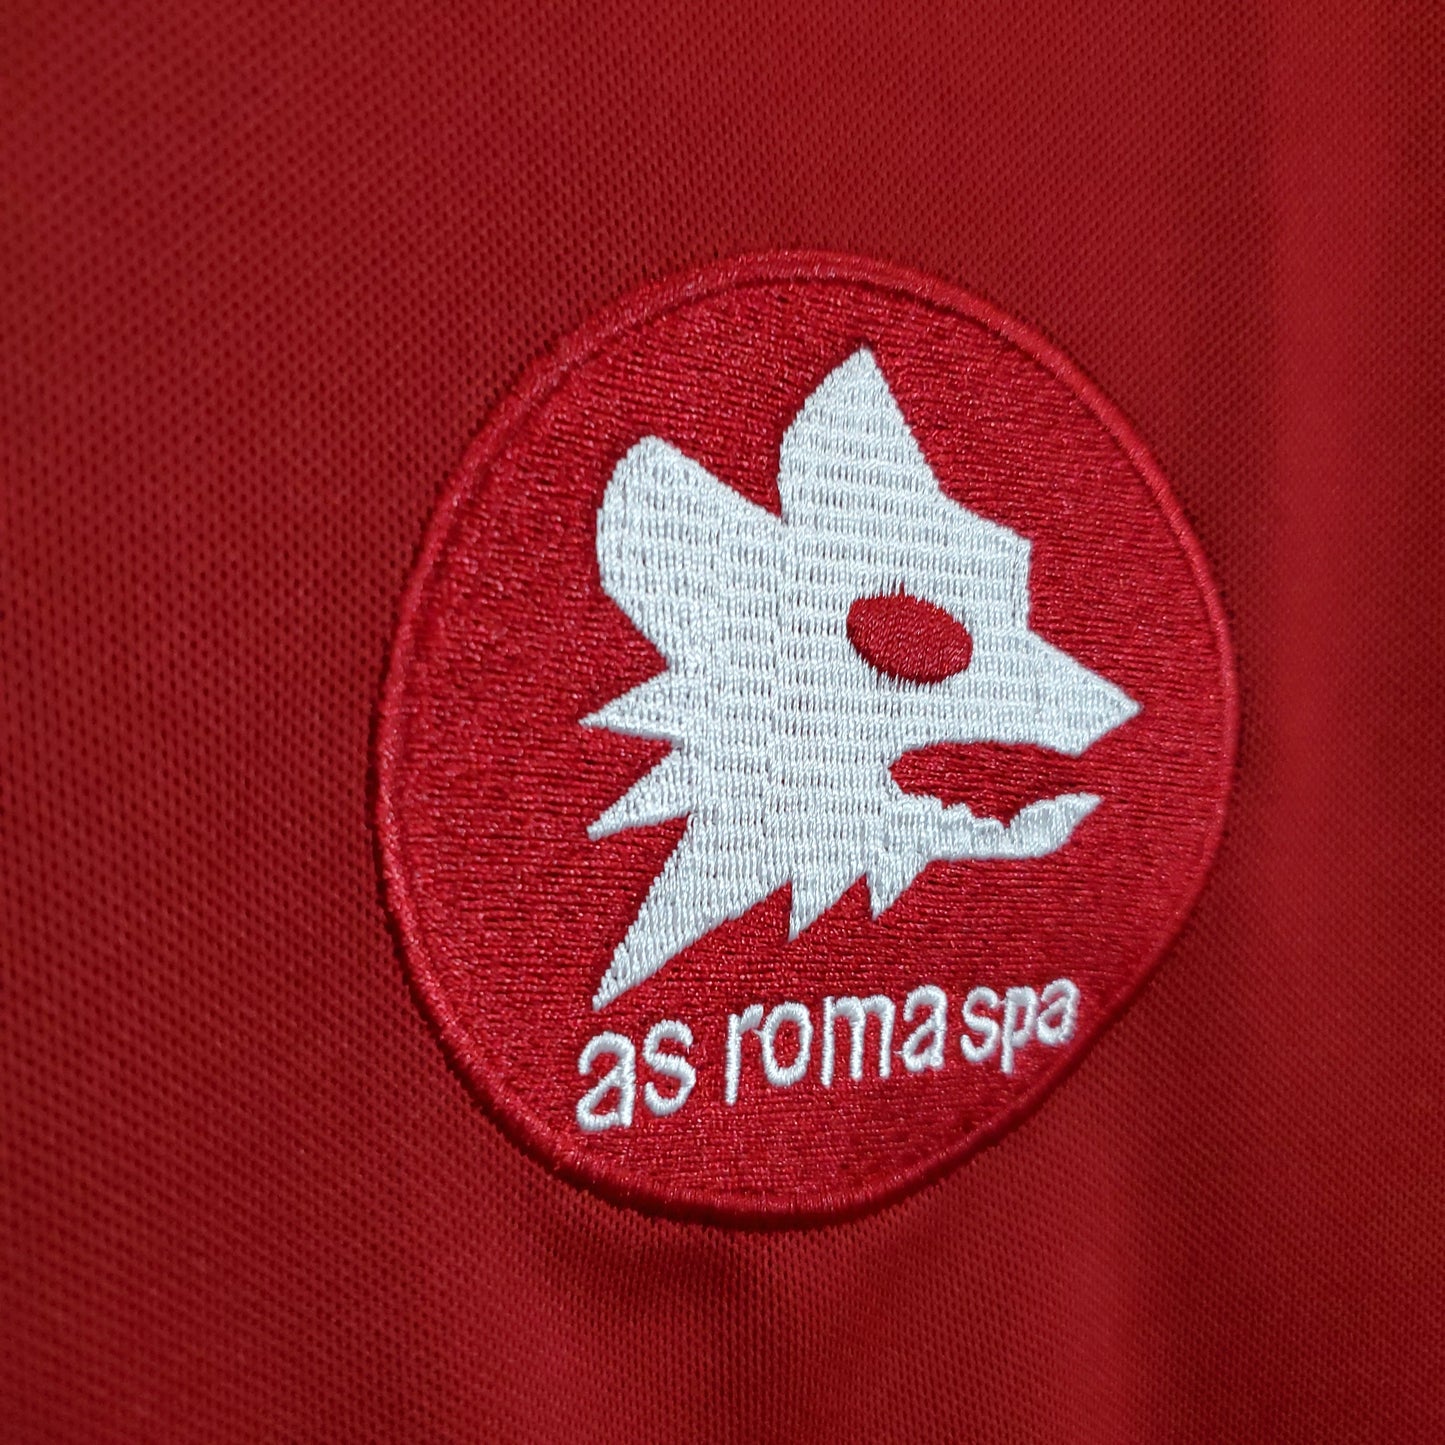 Retro Roma in casa 89-90 